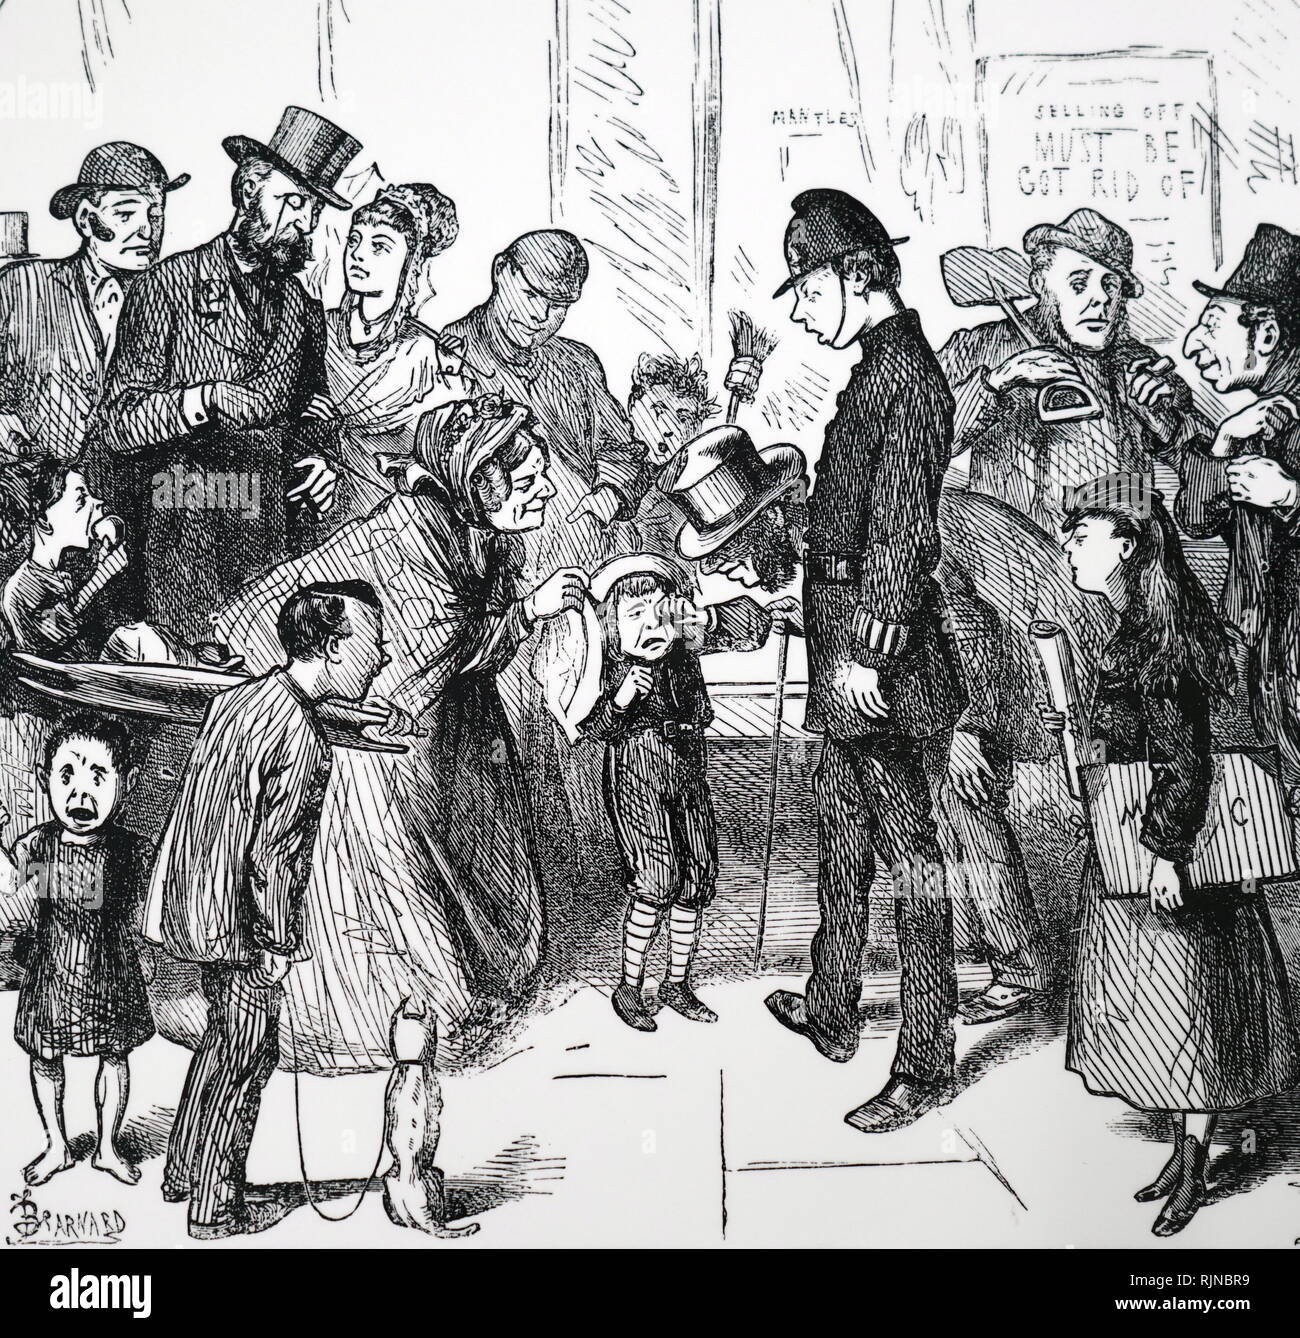 Ein Cartoon, einem Londoner Polizisten und Passanten versuchen, sinnvoll von ein verlorenes Kind zu erhalten. Illustriert von Friedrich Barnard (1846-1896). Vom 19. Jahrhundert Stockfoto